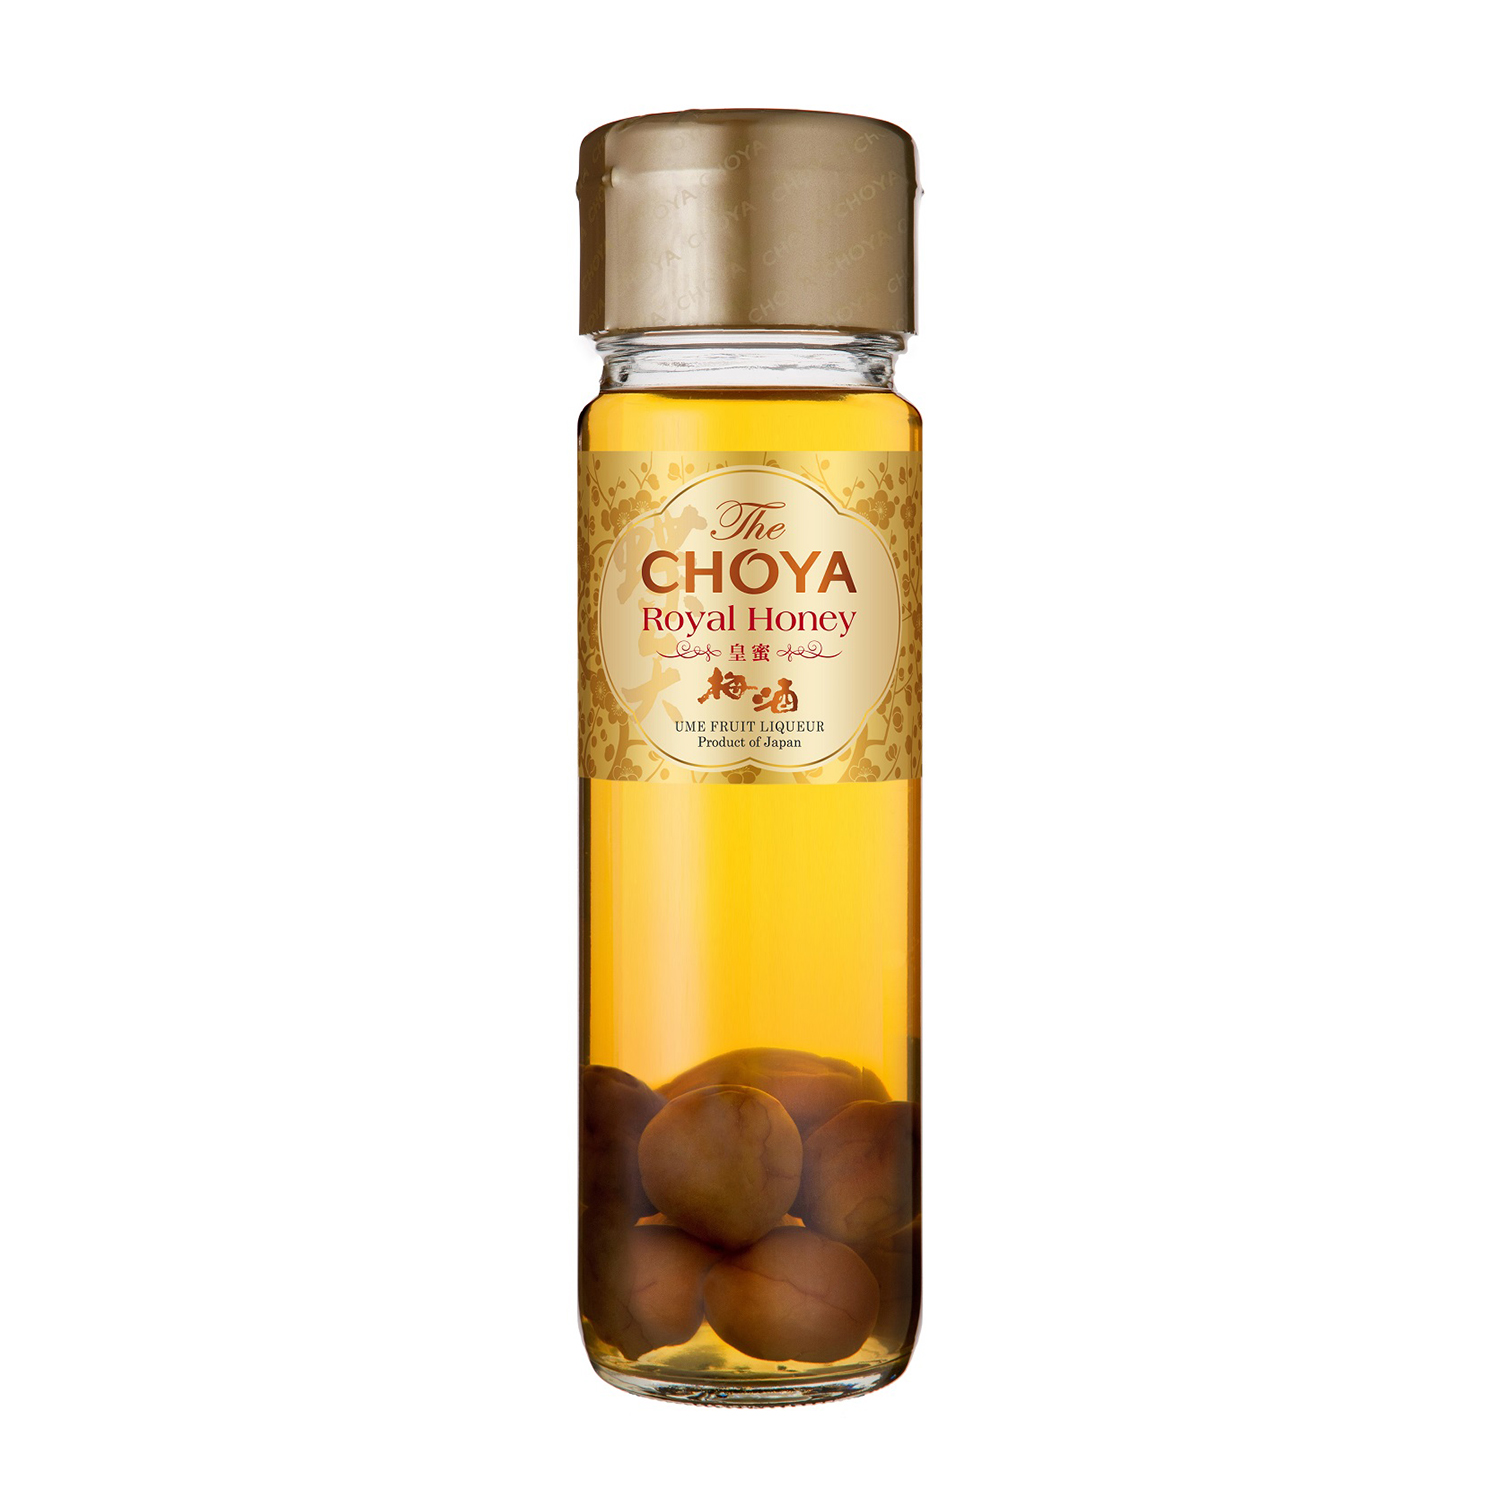 CHOYA Royal Honey